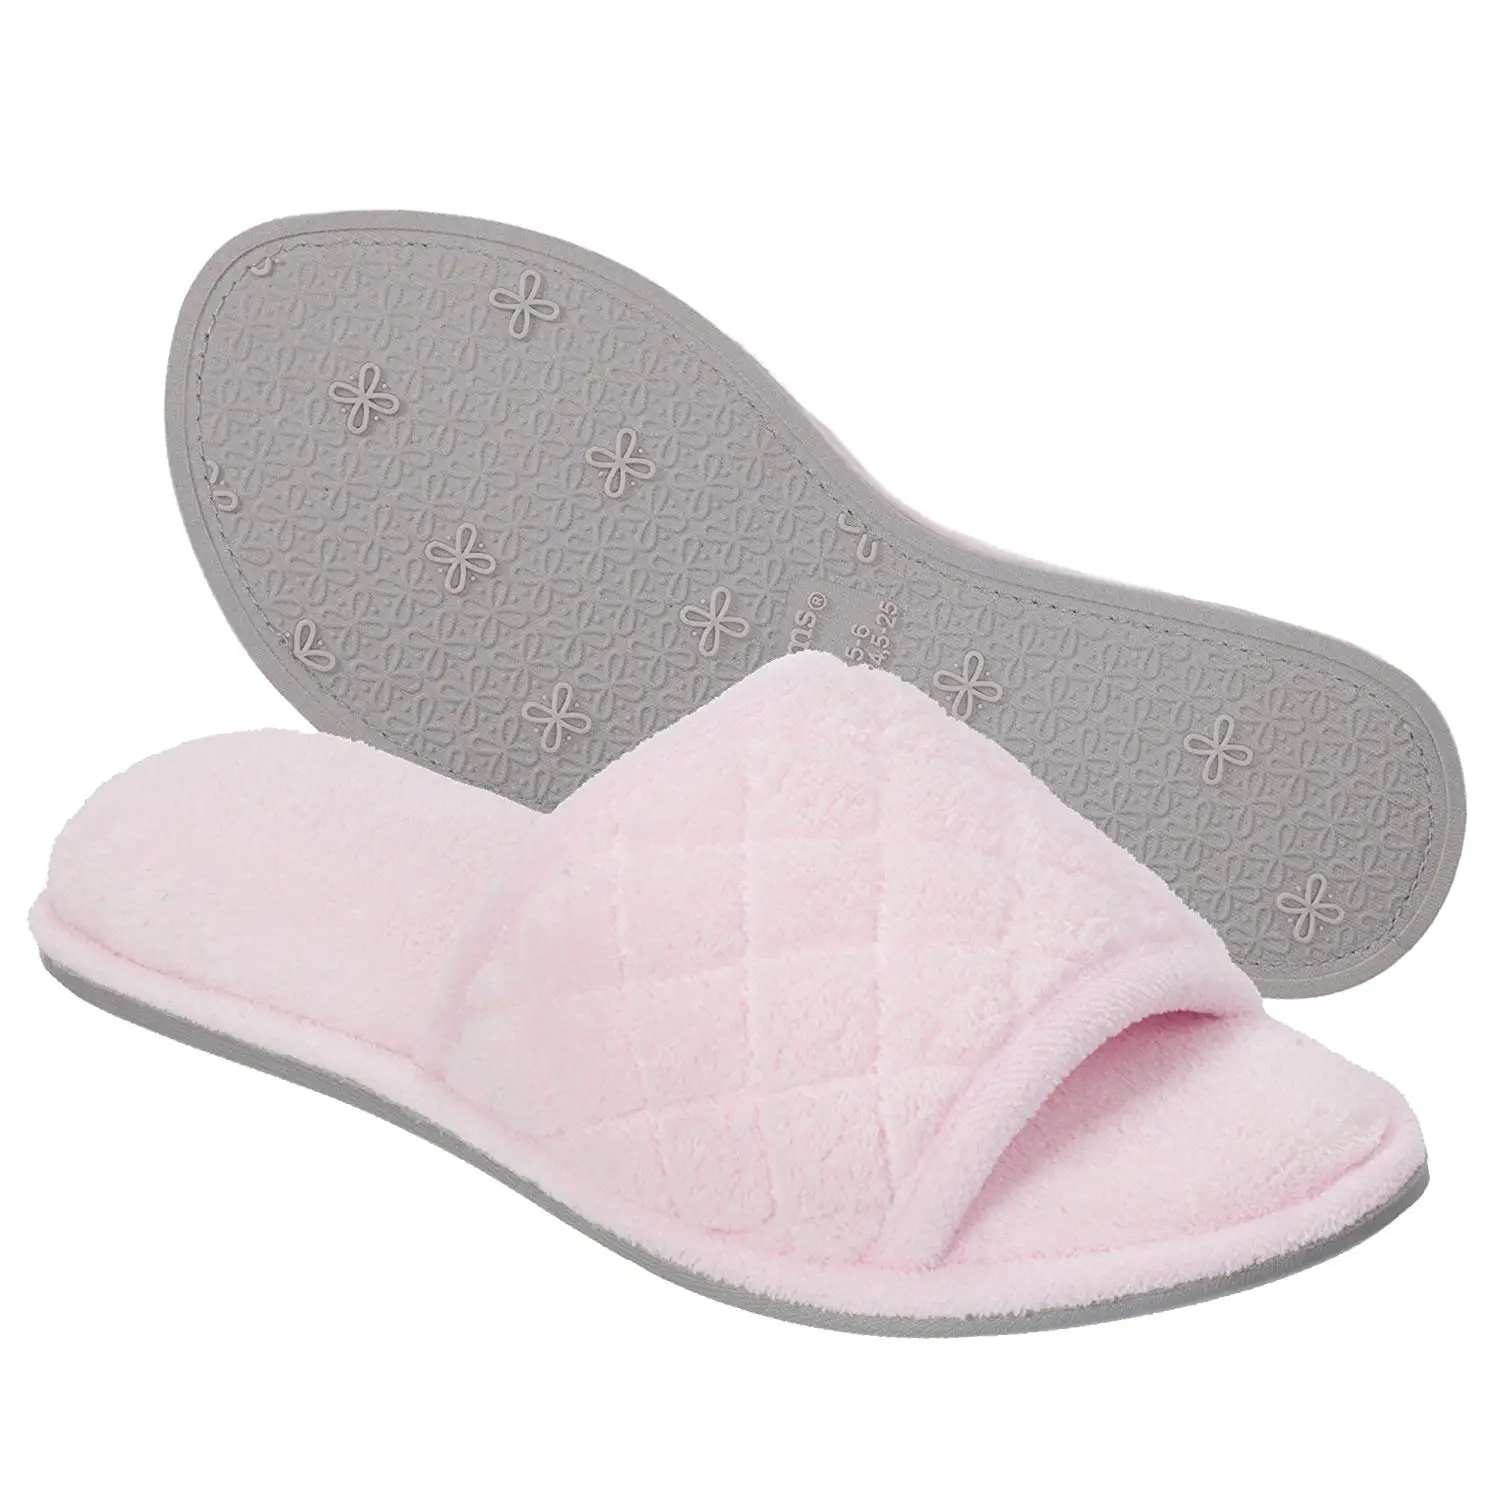 men's dearfoam wide width slippers